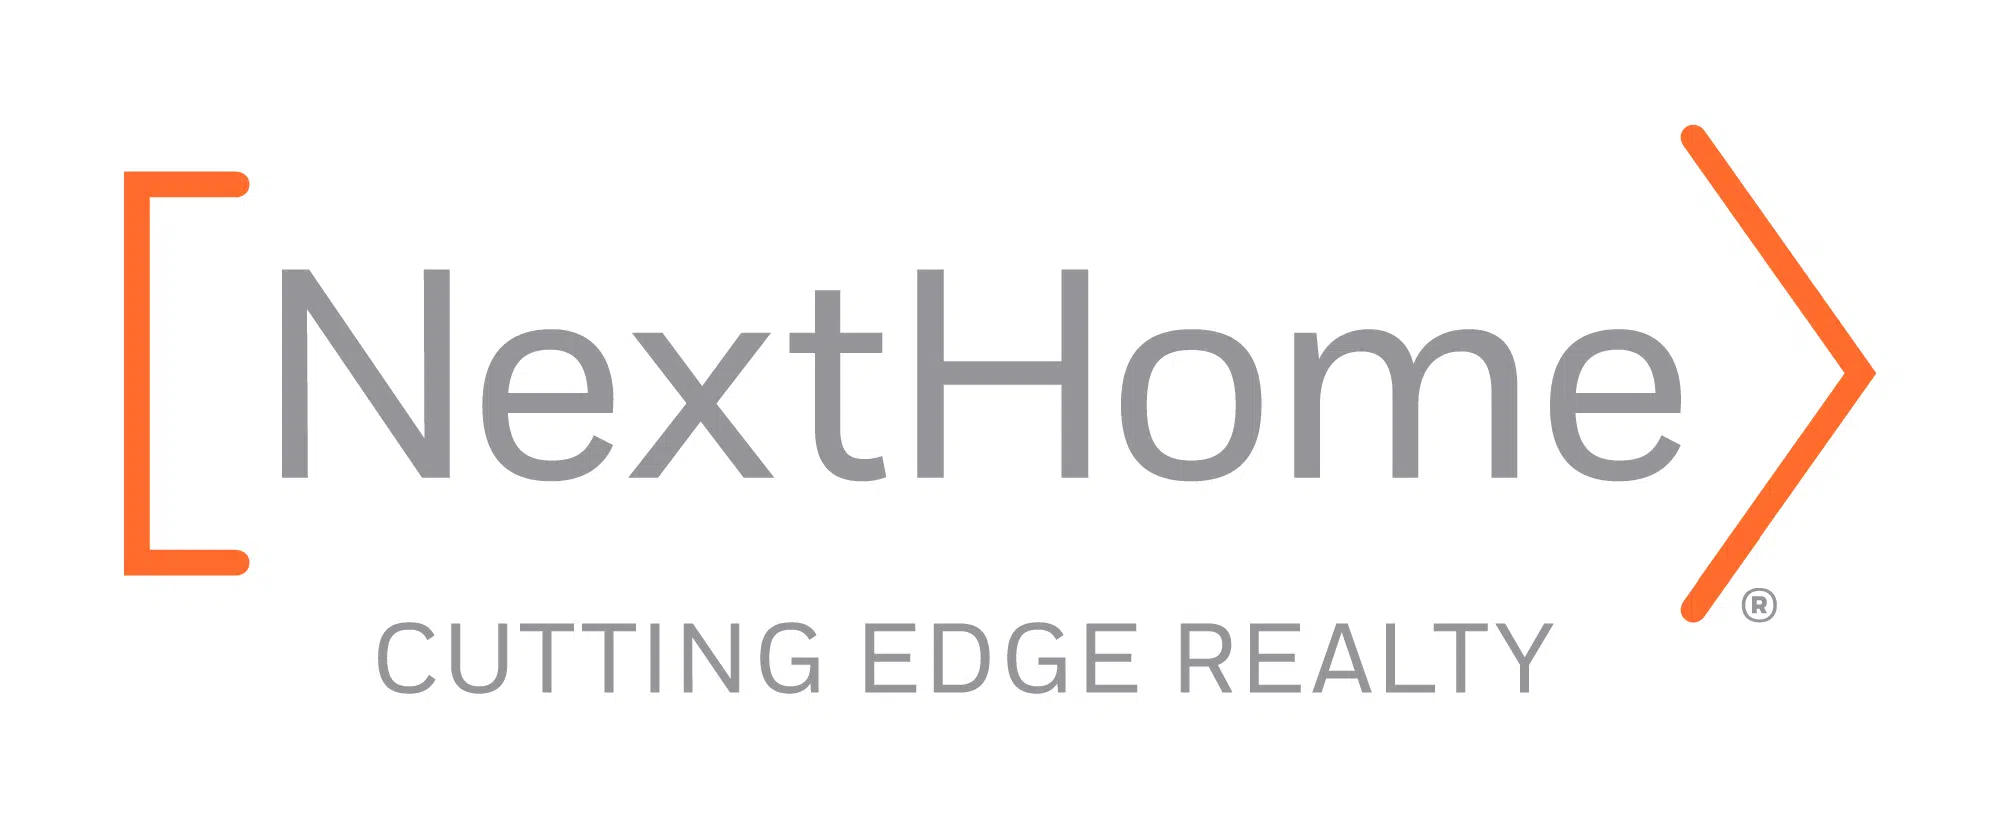 Nexthome cutting edge realty logo